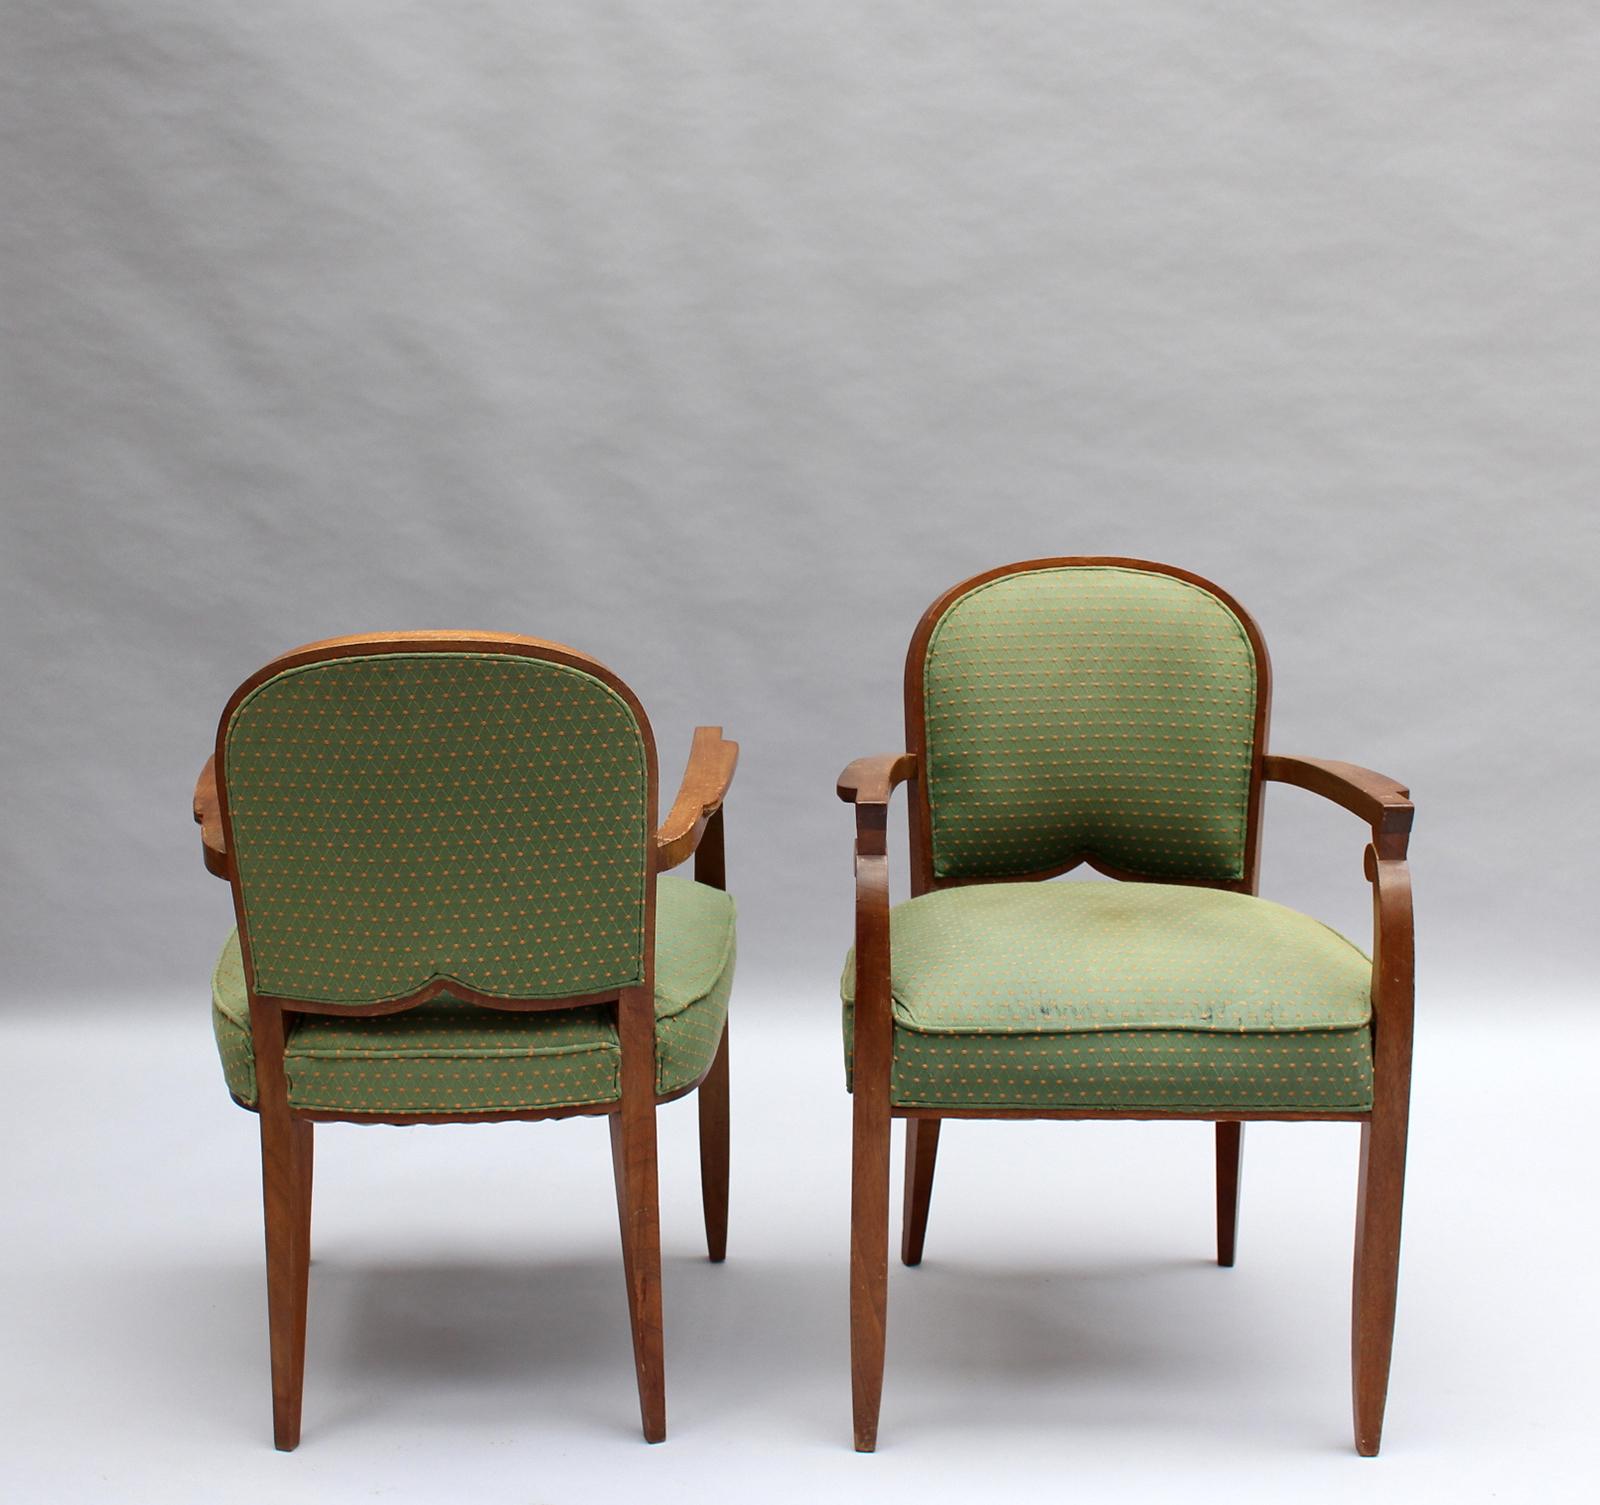 Jules Leleu (1883-1961) - Zwei schöne französische Art Déco-Sessel aus Mahagoni von Jules Leleu.
Der Preis gilt pro Sessel, es sind nur zwei verfügbar.